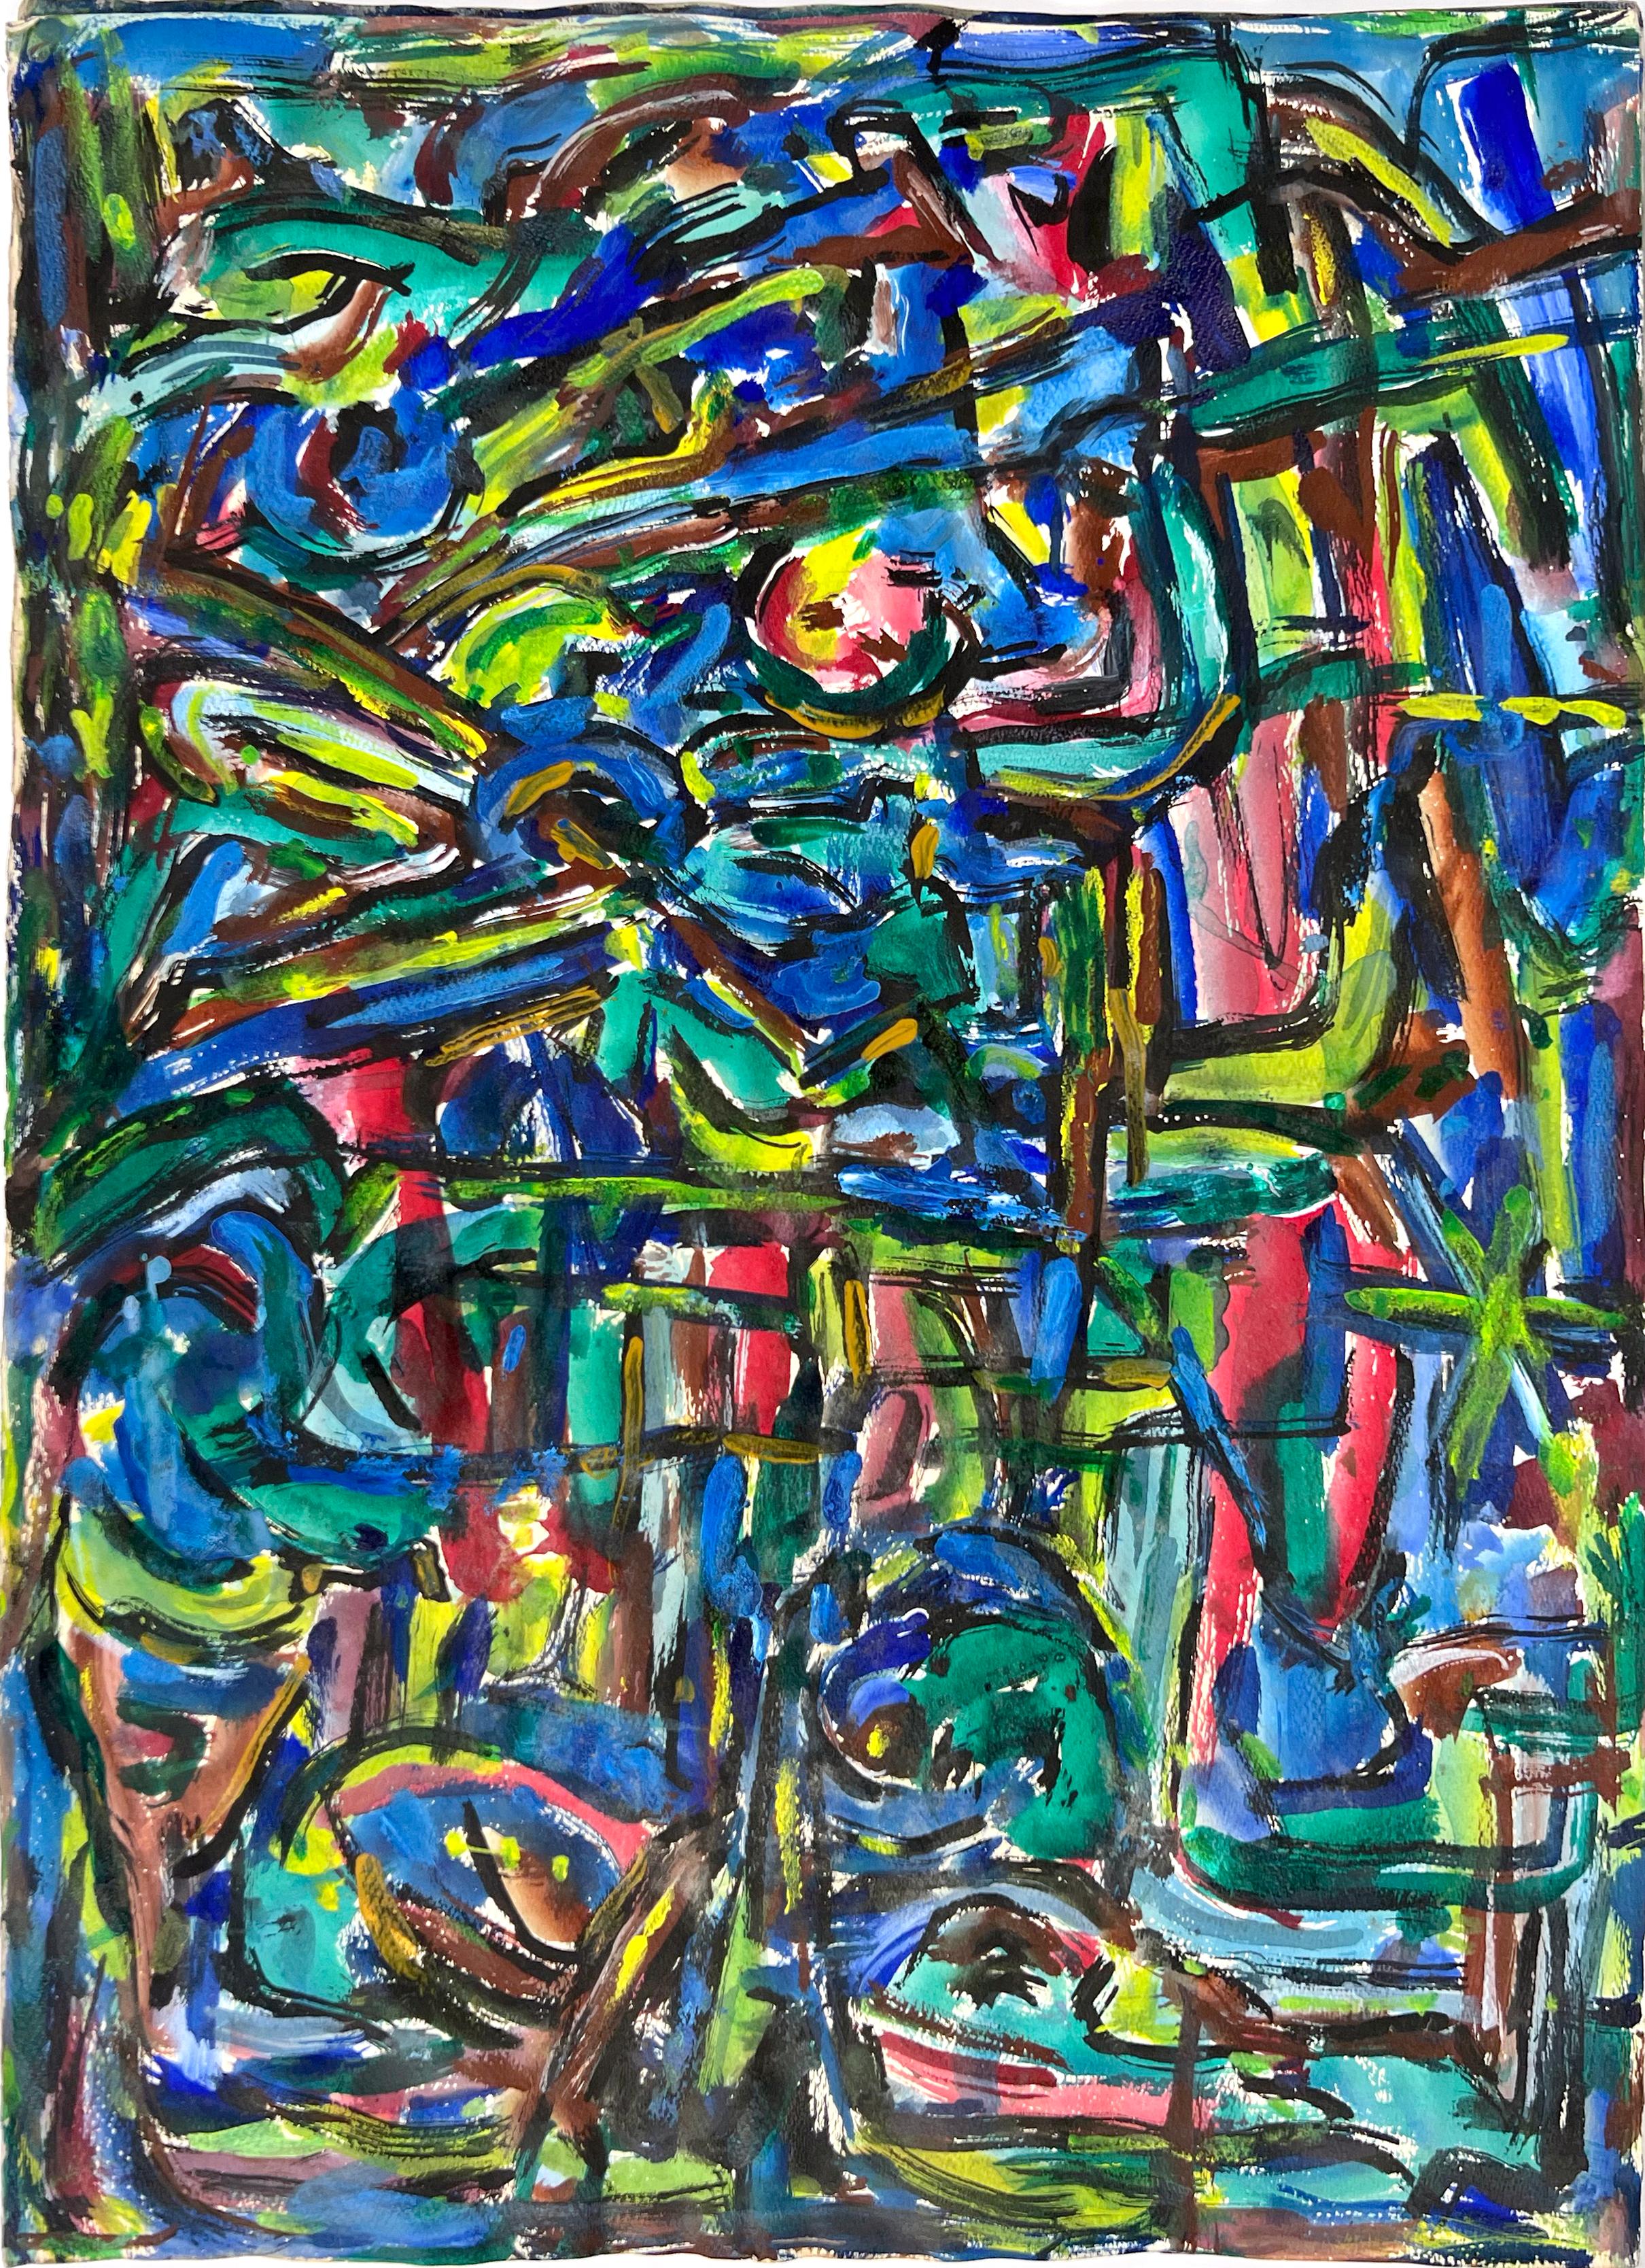 Expressionniste abstrait fauve de la baie de San Francisco Huile sur papier Honora Berg Berkeley 1959
Peinture expressionniste abstraite de Honora Berg (américaine, 1897-1985), réalisée dans la région de la baie de San Francisco. Éclaboussures de 